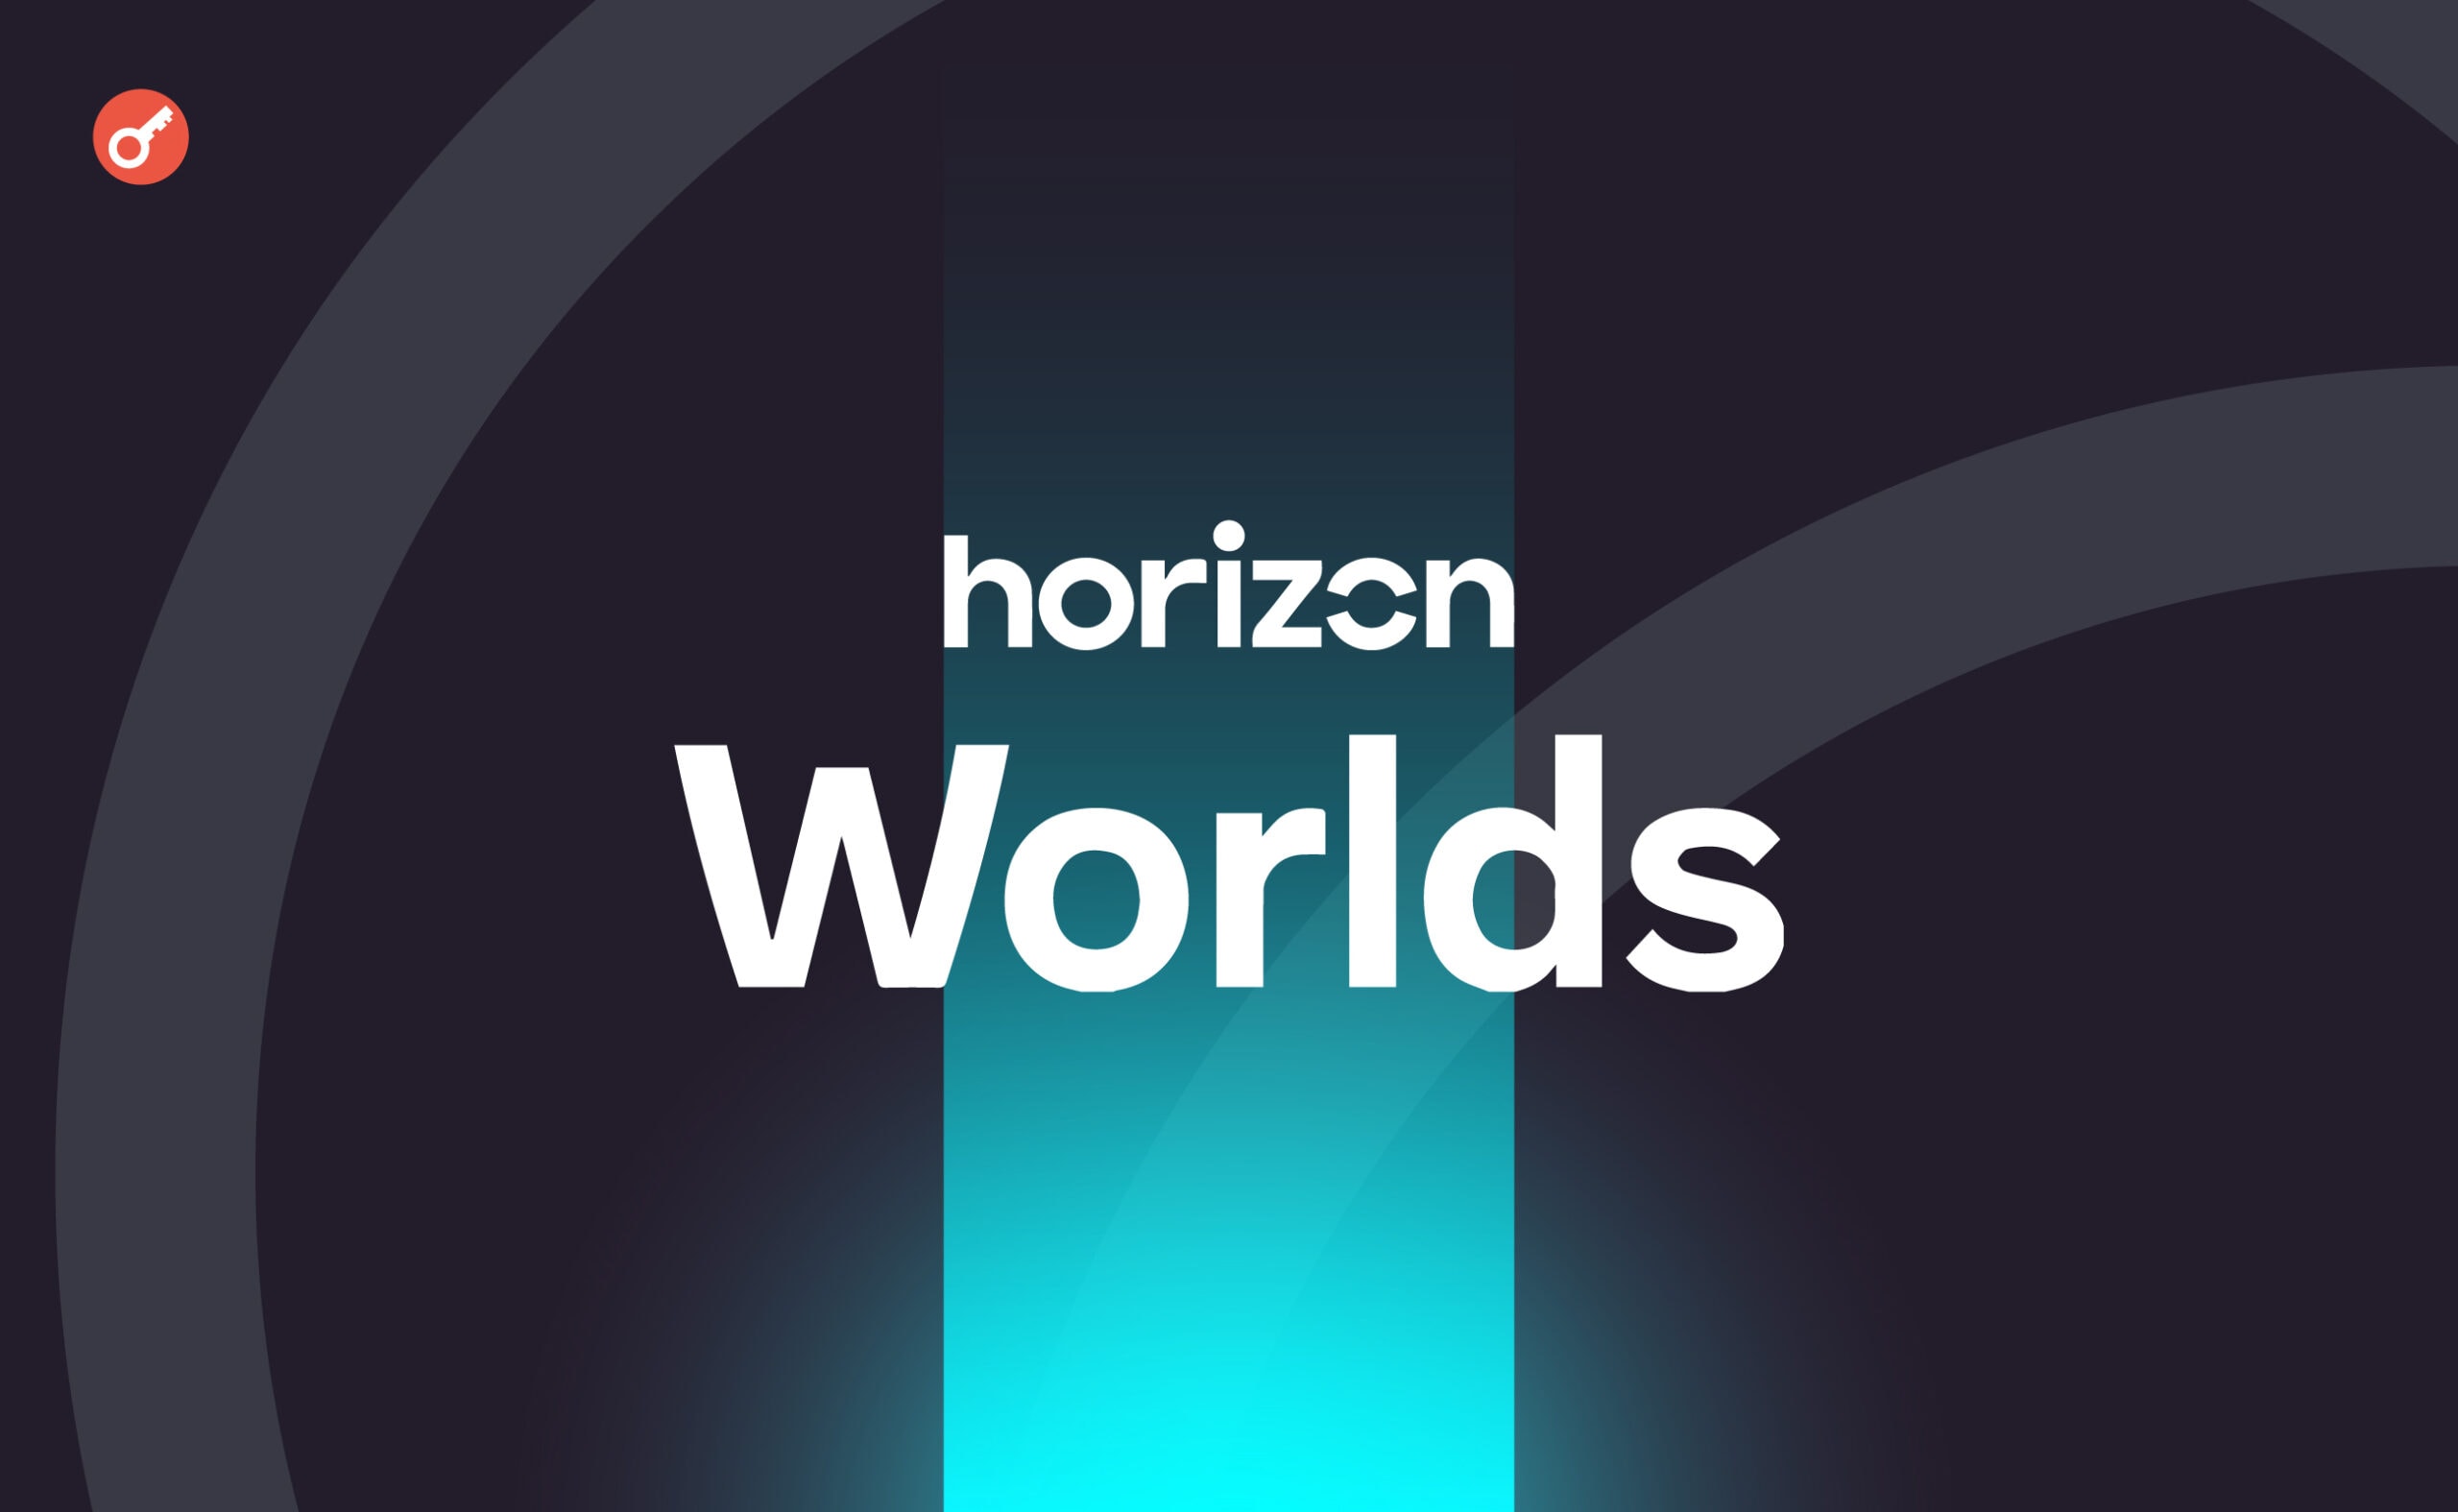 Horizon Worlds Цукерберга стала доступна на смартфонах и в браузерах. Заглавный коллаж новости.